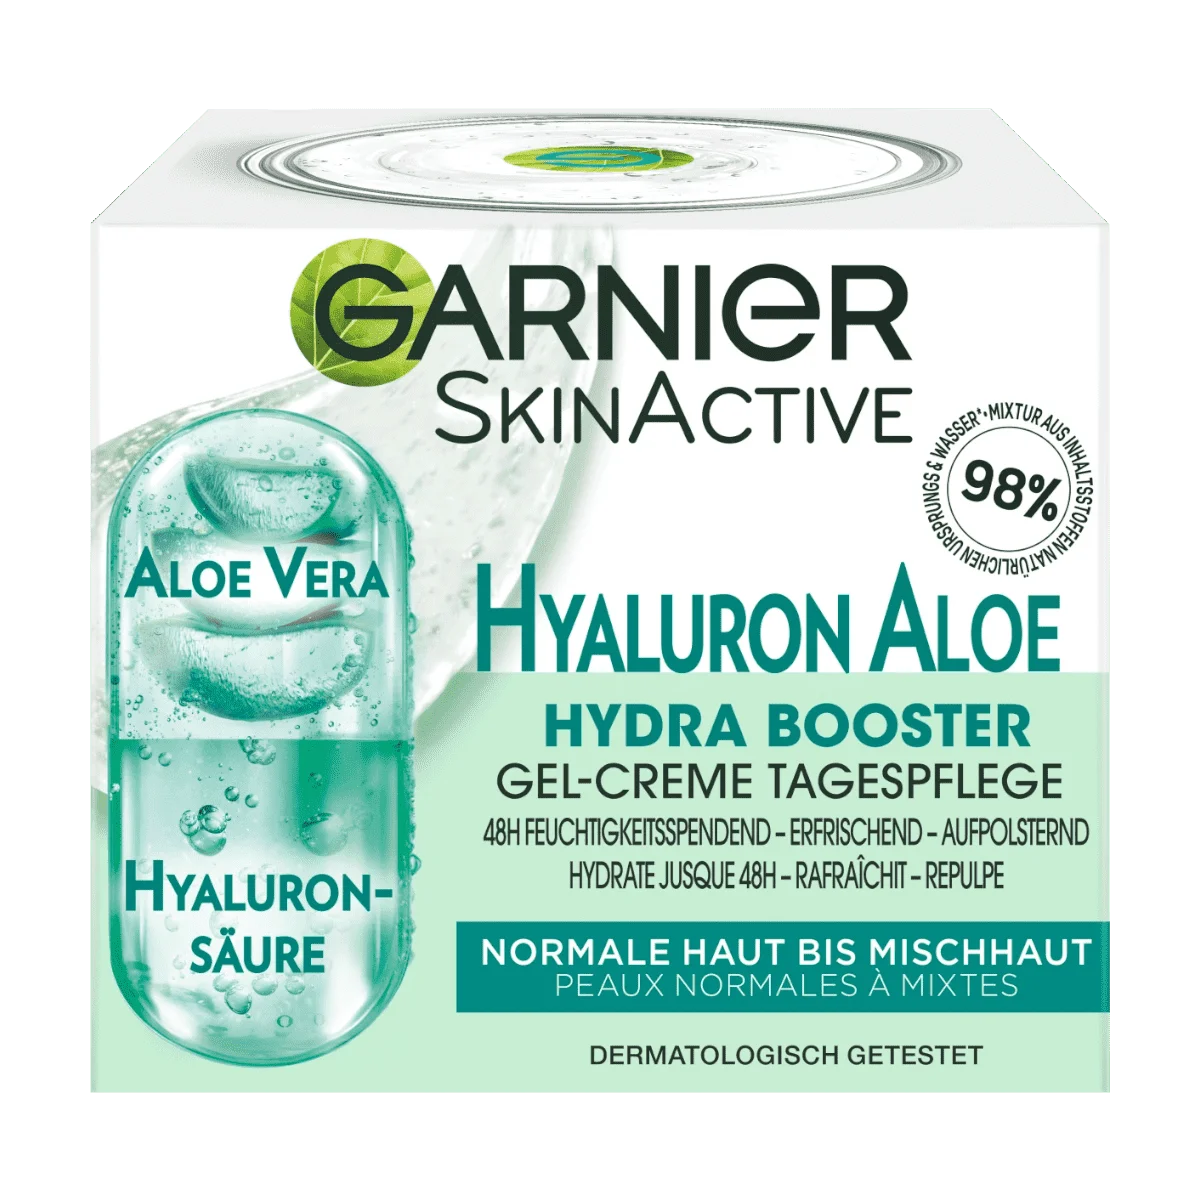 Garnier SkinActive Hyaluron Aloe Gel-Creme, 50 ml